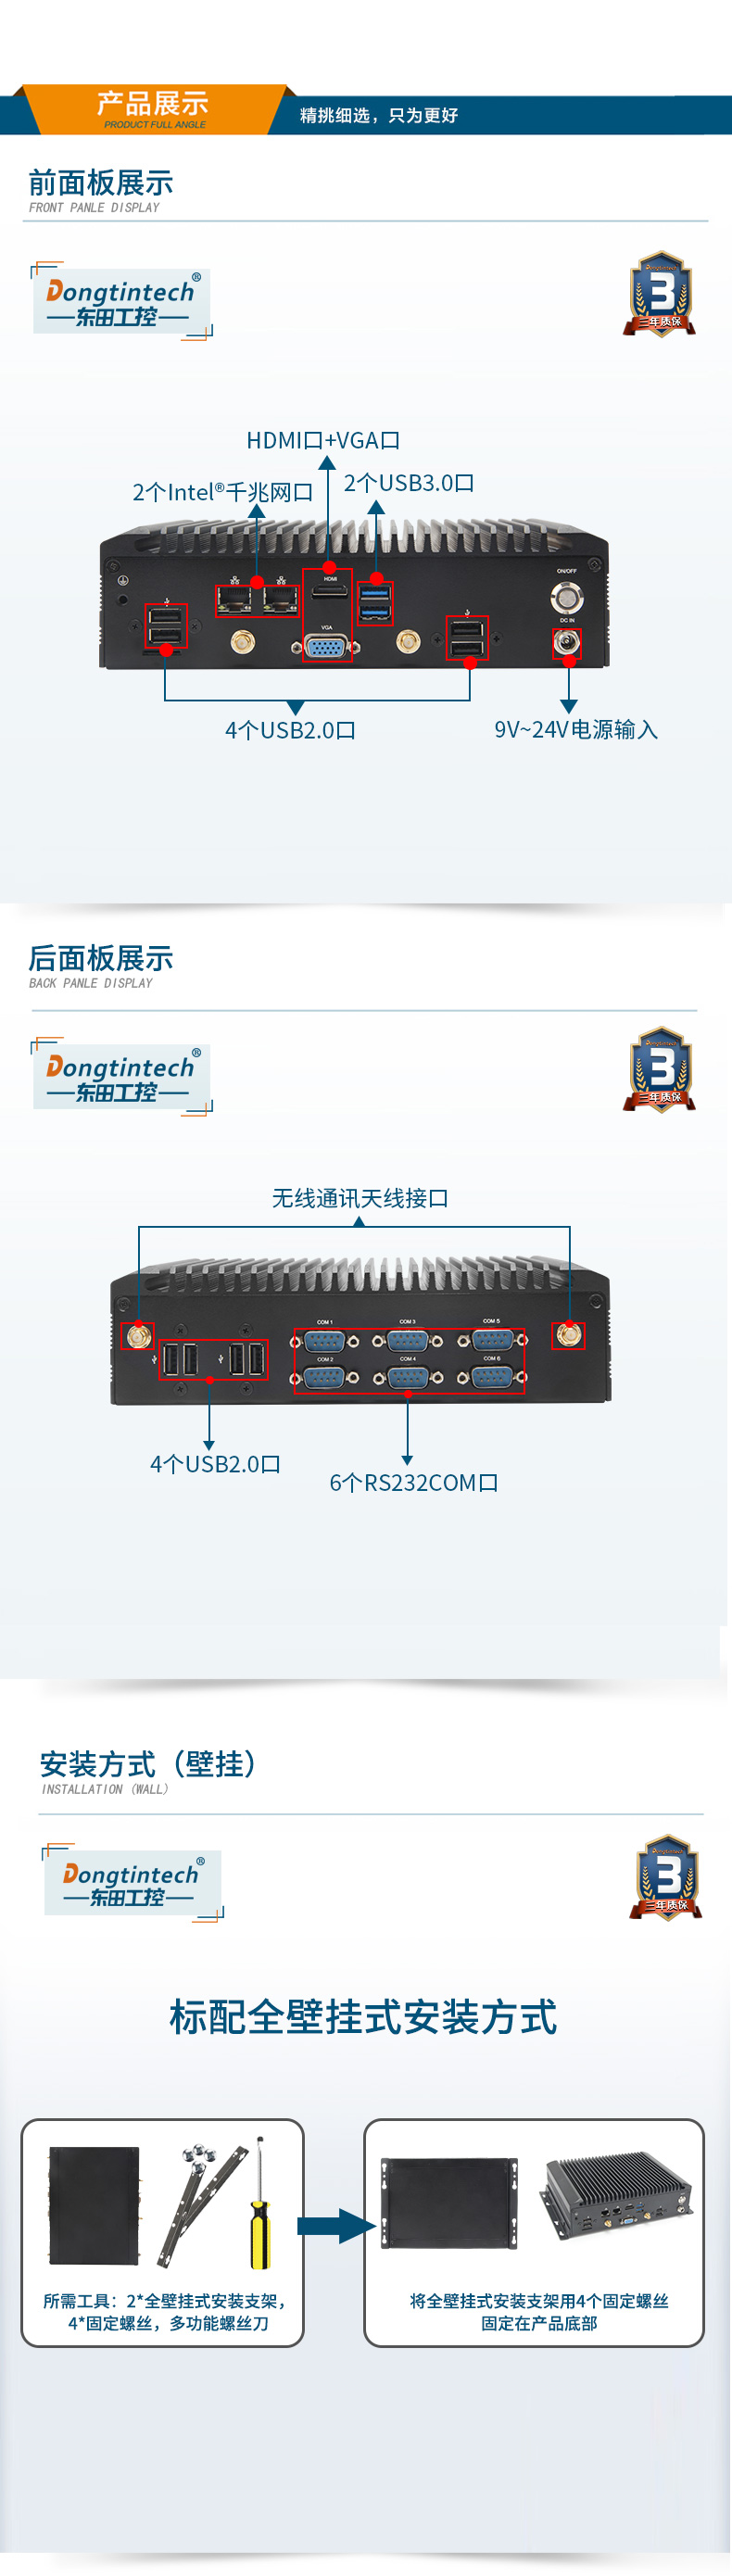 酷睿7代工业计算机,无风扇嵌入式工控机,DTB-2042-7200U.jpg